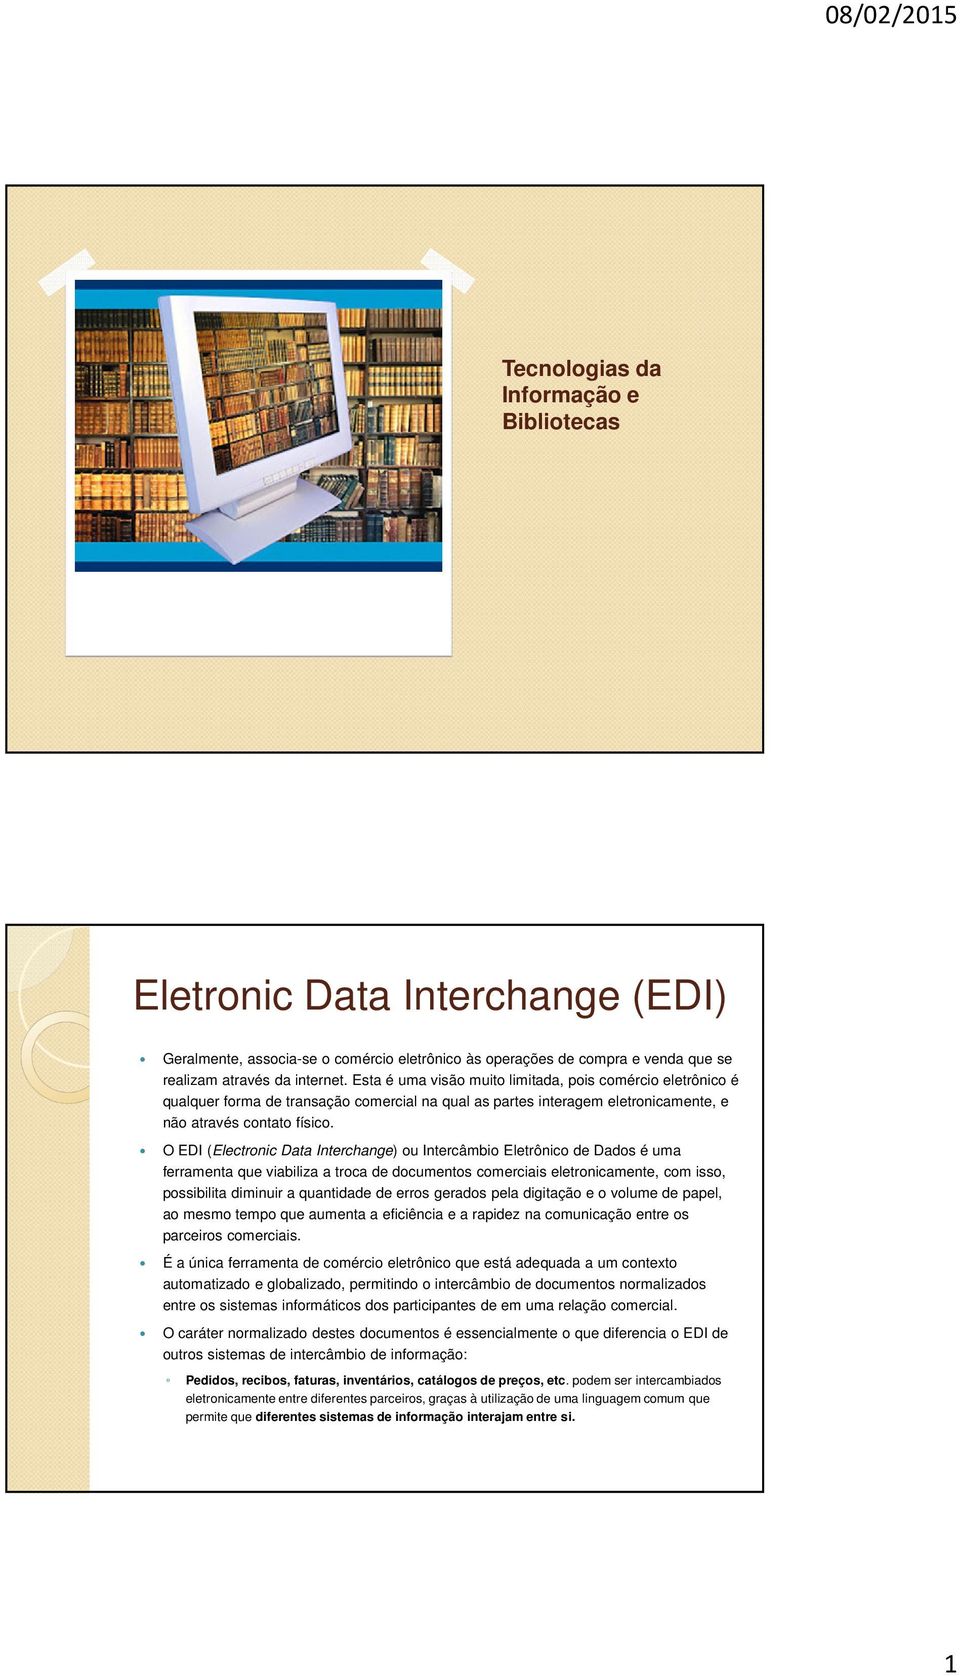 O EDI (Electronic Data Interchange) ou Intercâmbio Eletrônico de Dados é uma ferramenta que viabiliza a troca de documentos comerciais eletronicamente, com isso, possibilita diminuir a quantidade de